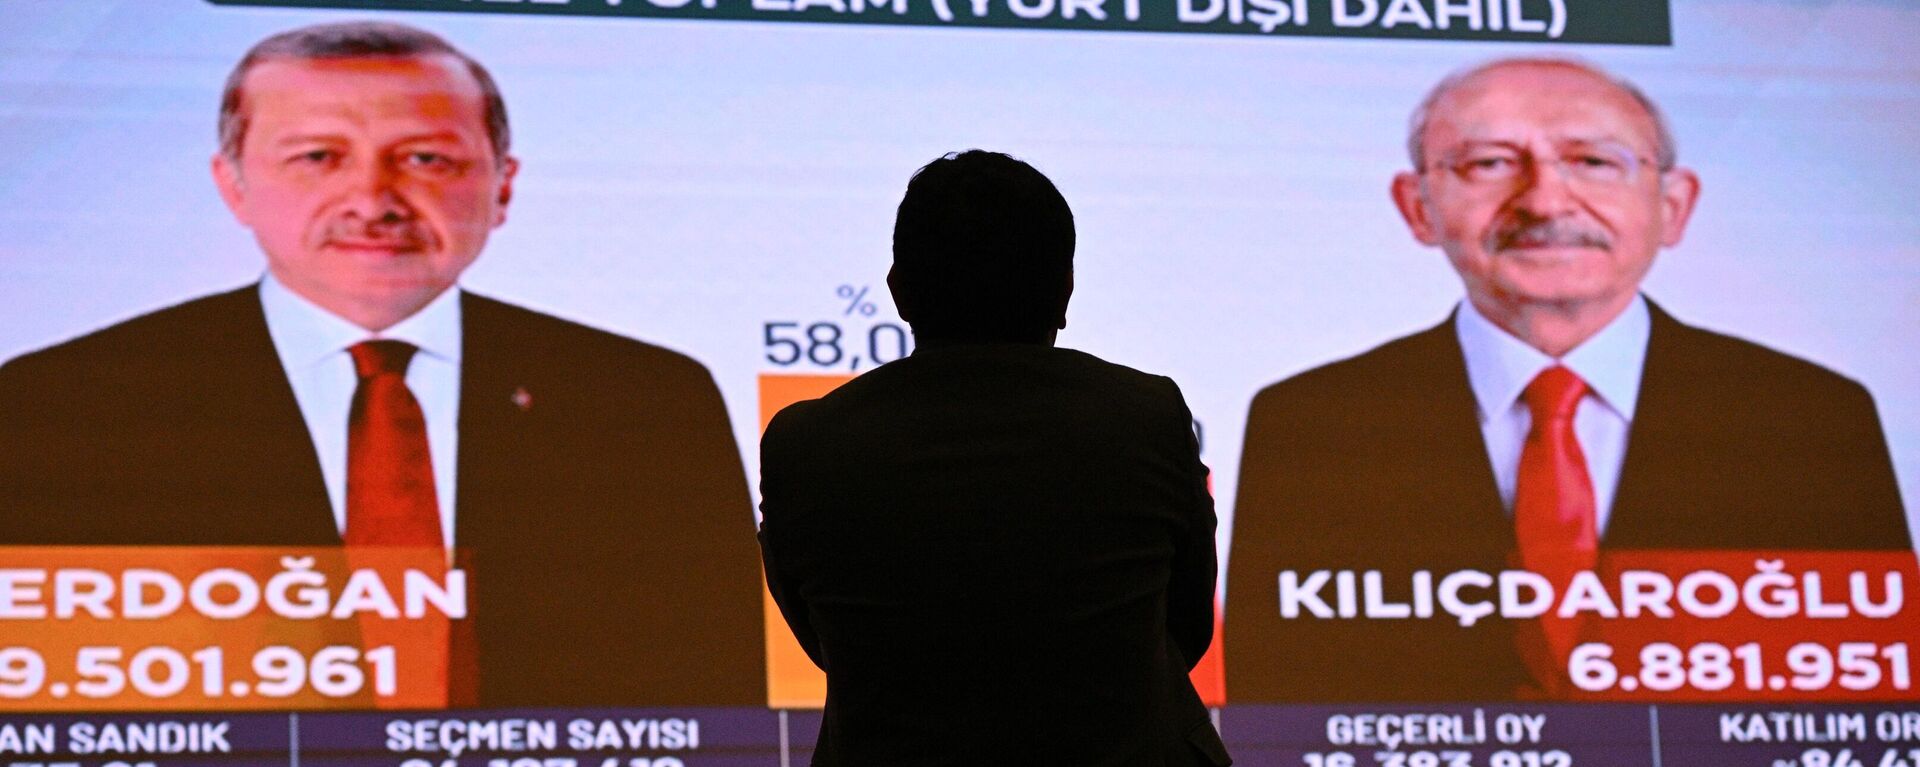 Экран с предварительными итогами голосования во втором туре президентских выборов  - Sputnik Кыргызстан, 1920, 28.05.2023